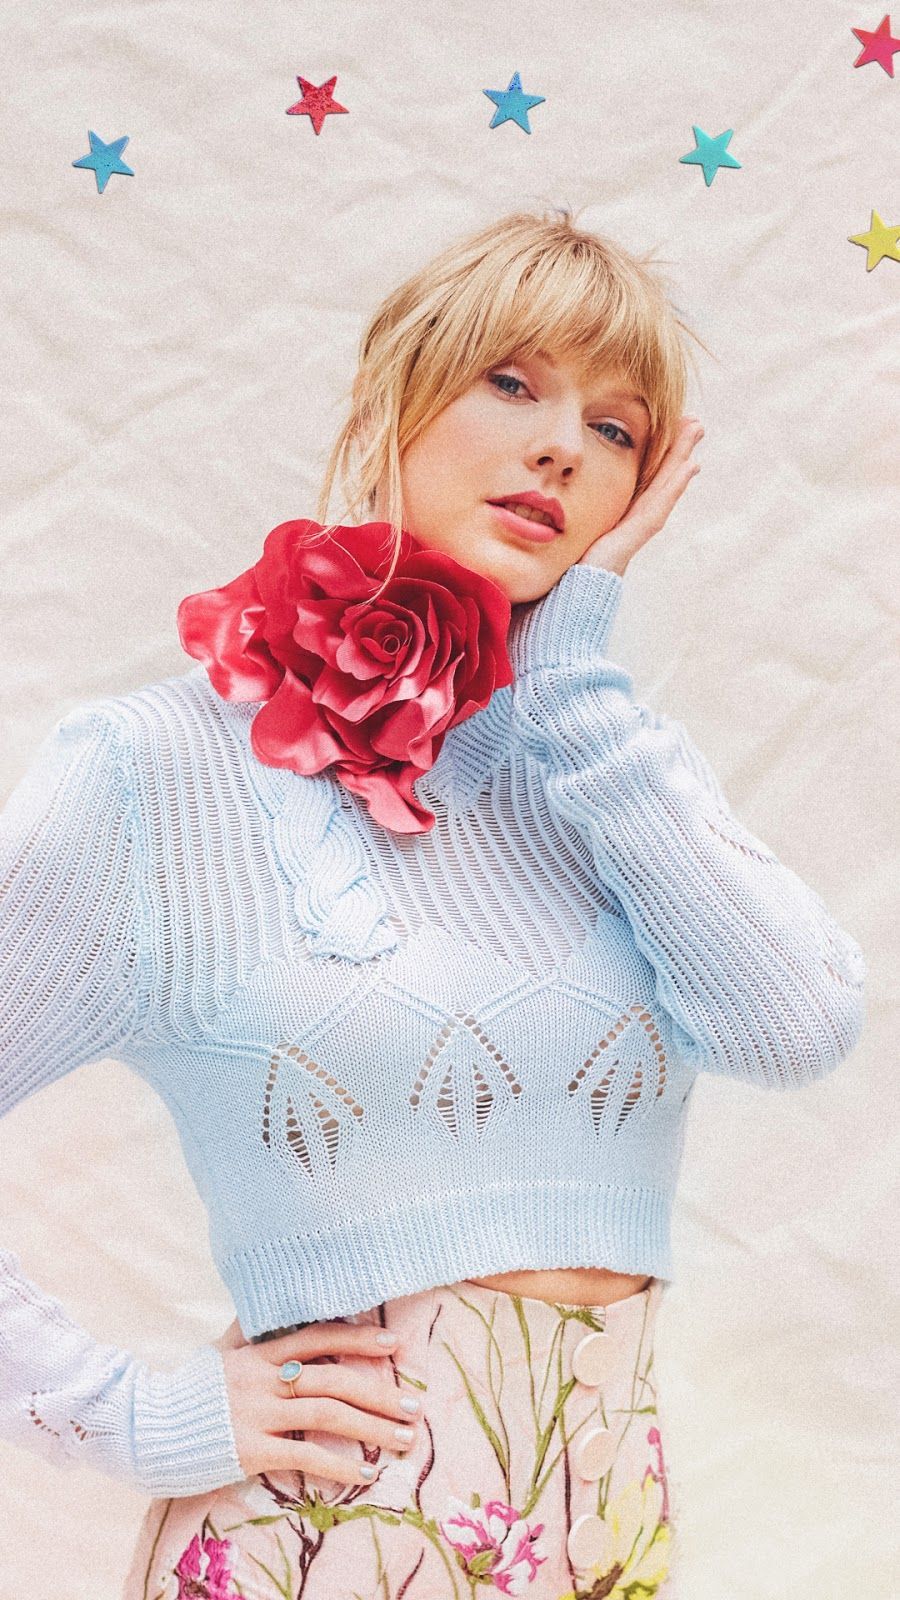 Pop Singer Taylor Swift mobile wallpaper. Taylor swift wallpaper, Taylor swift music, Taylor swift album